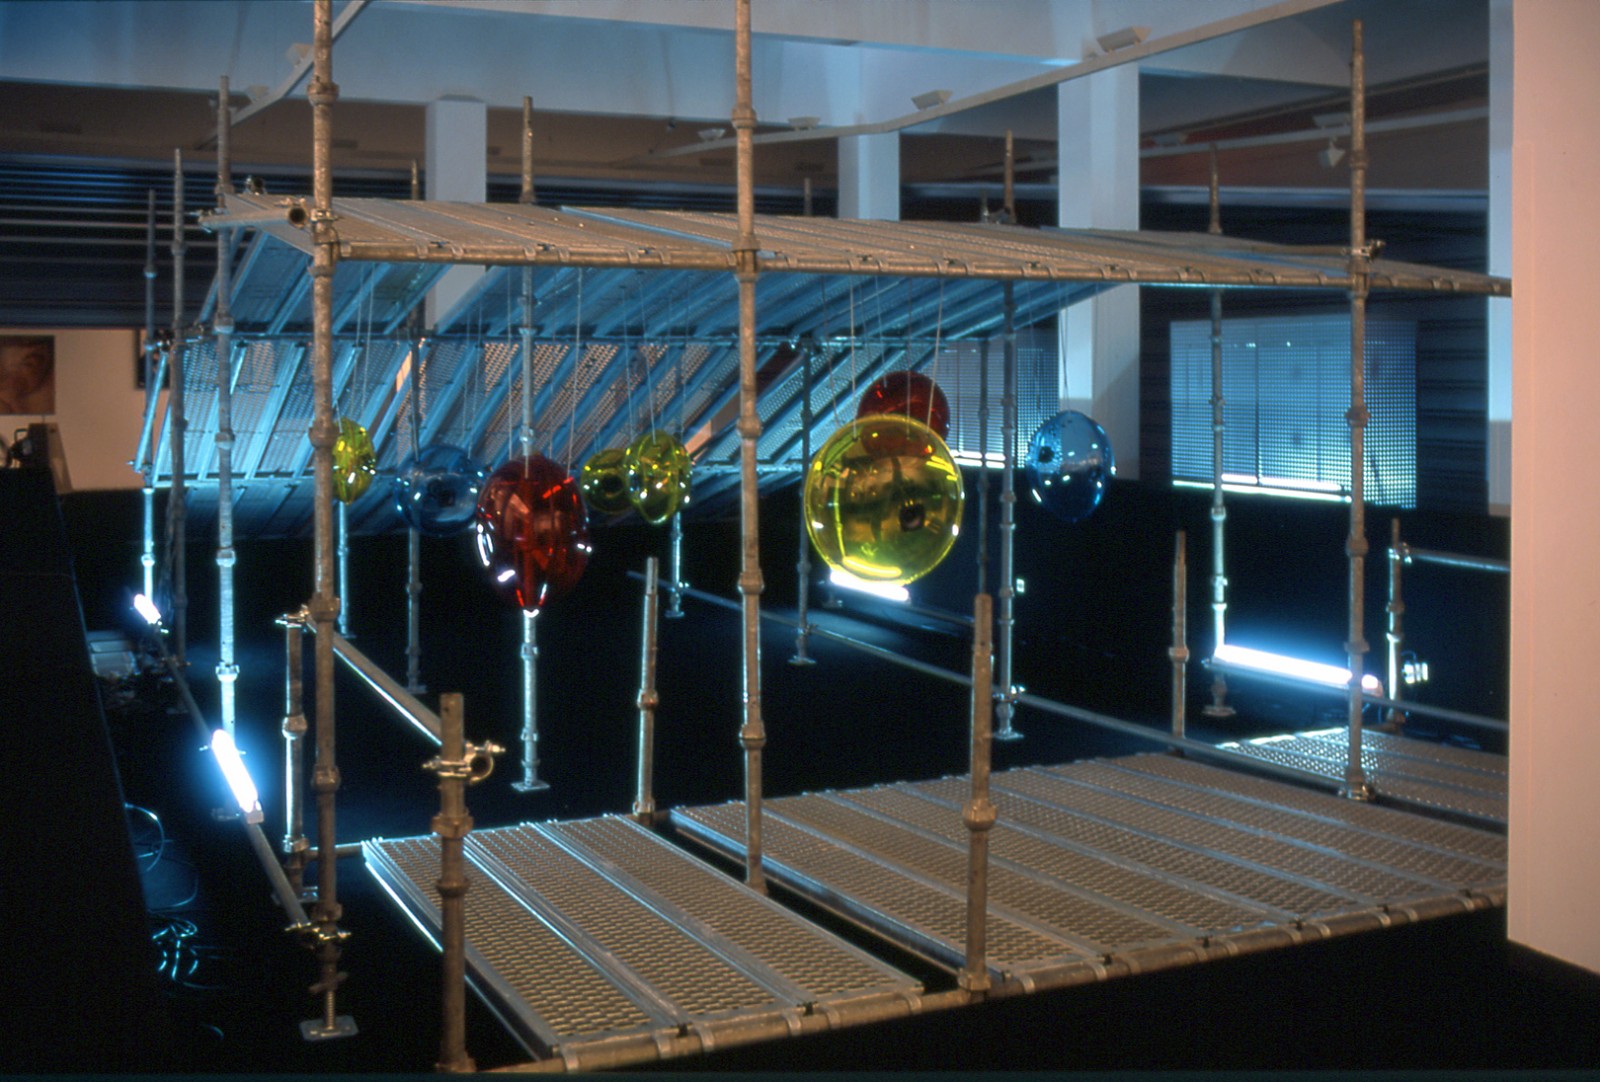 Vista geral da instalação na Bienal da Maia - 2001 / General view at the Maia Biennial 2001